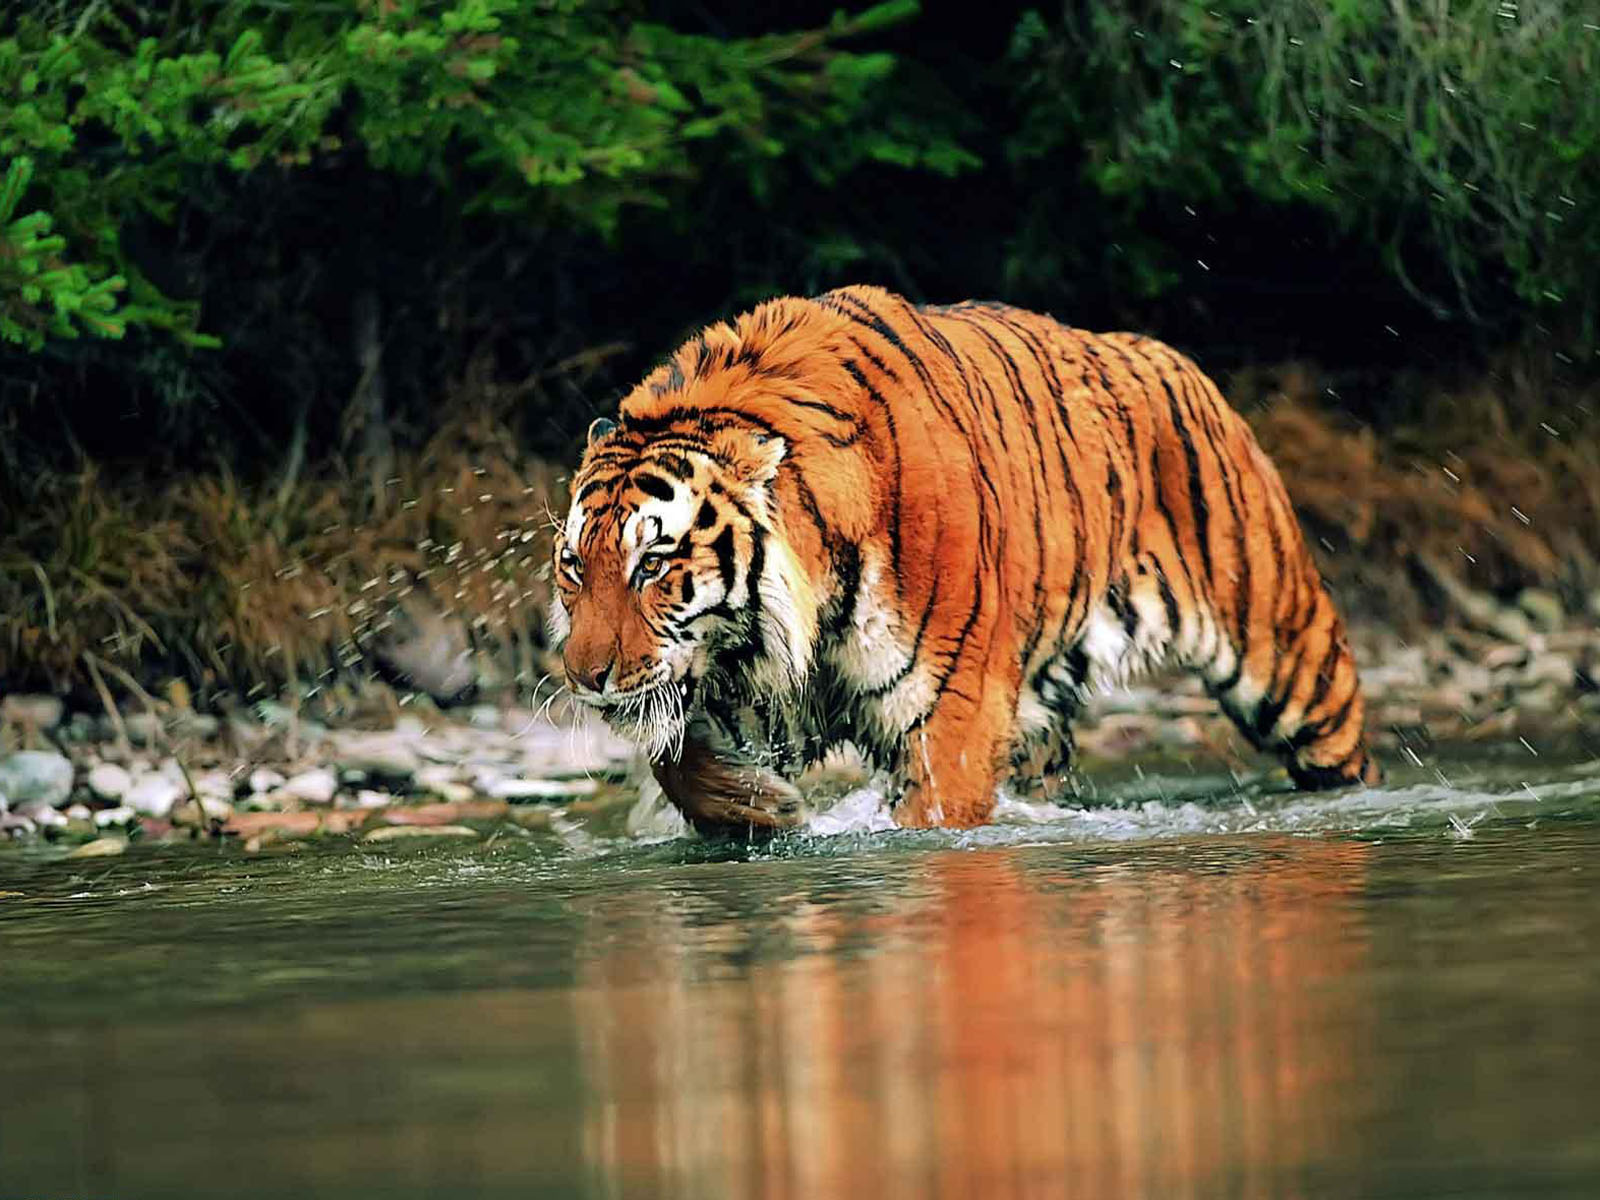  bengal tiger wallpapers bengal tiger desktop wallpapers bengal tiger